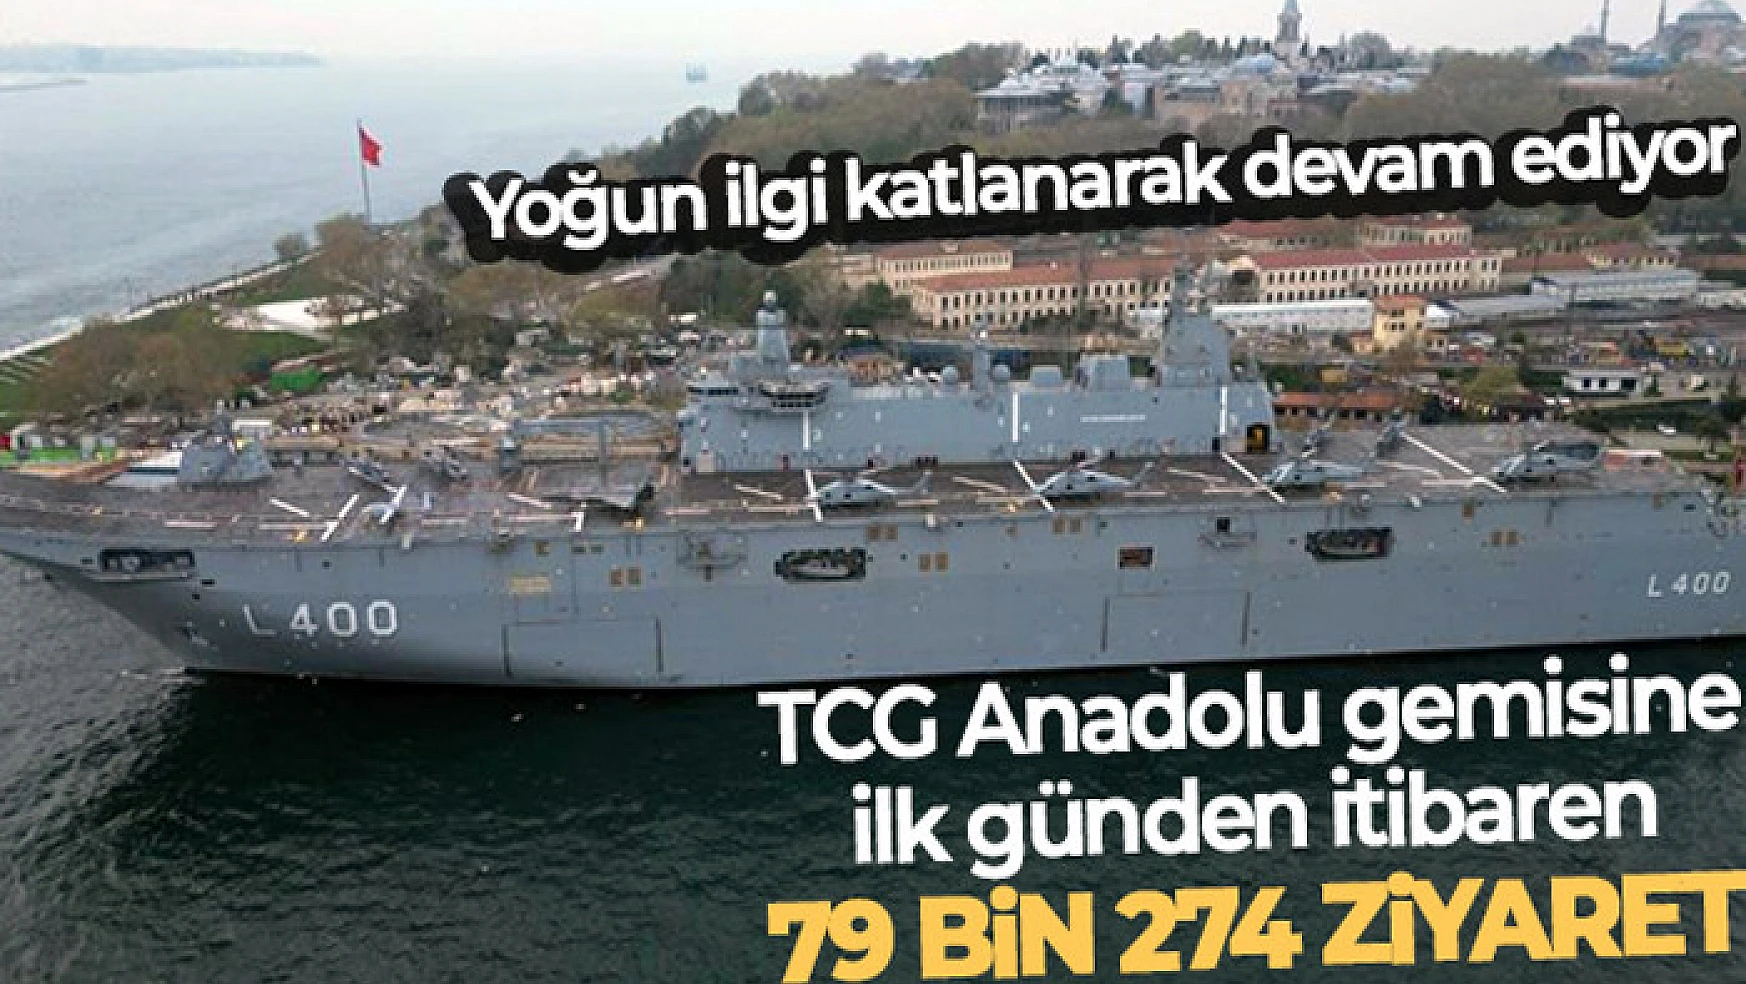 TCG Anadolu gemisini ilk günden itibaren 79 bin 274 kişi ziyaret etti